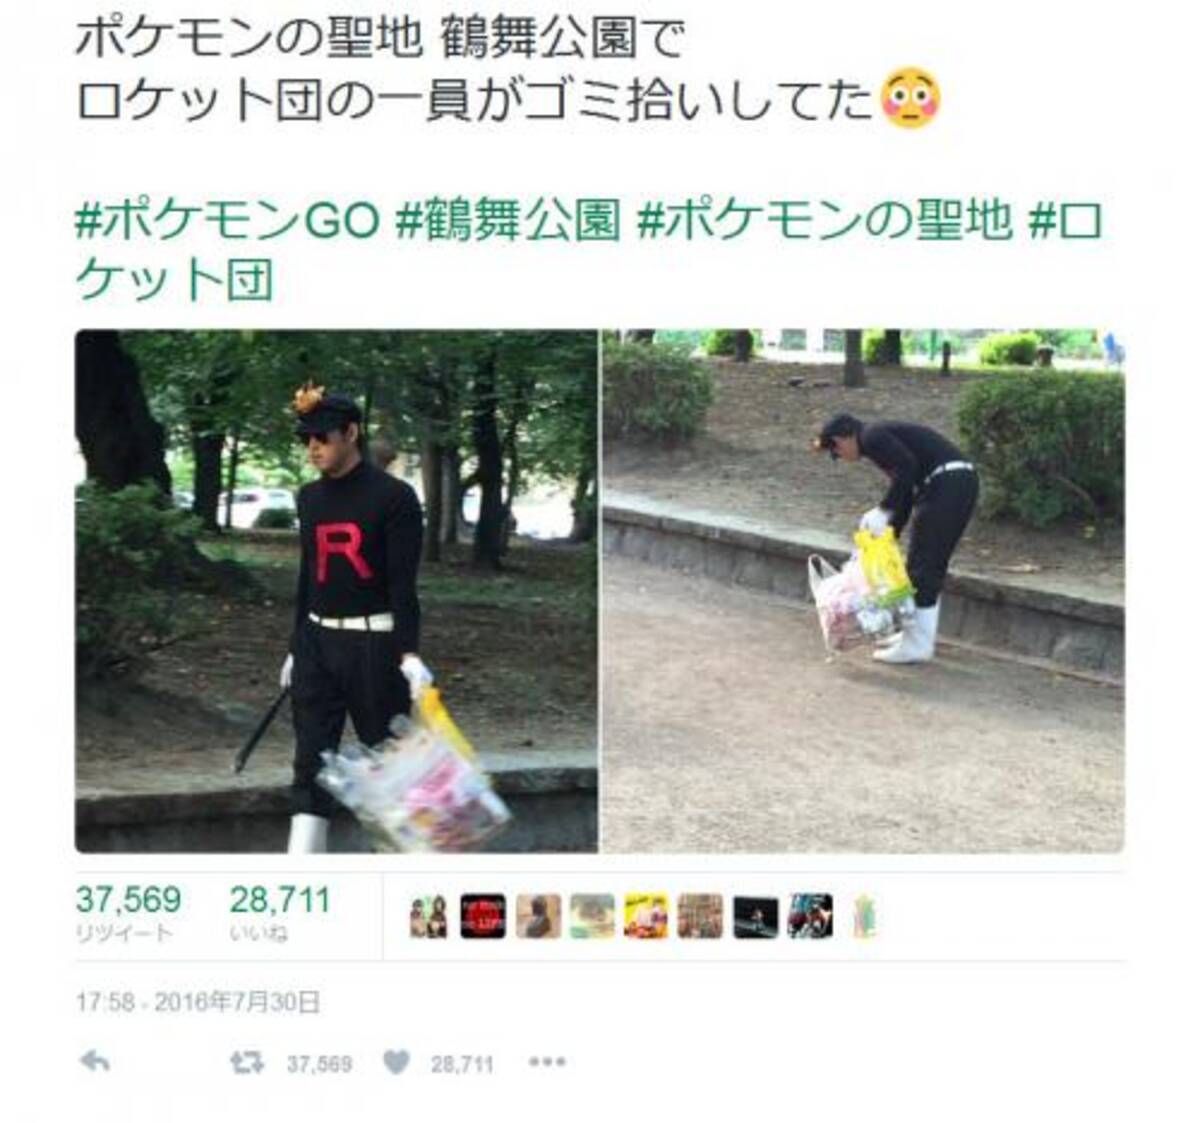 ポケモンの聖地 鶴舞公園 でロケット団がゴミ拾いしていた ツイートが話題に 16年8月2日 エキサイトニュース